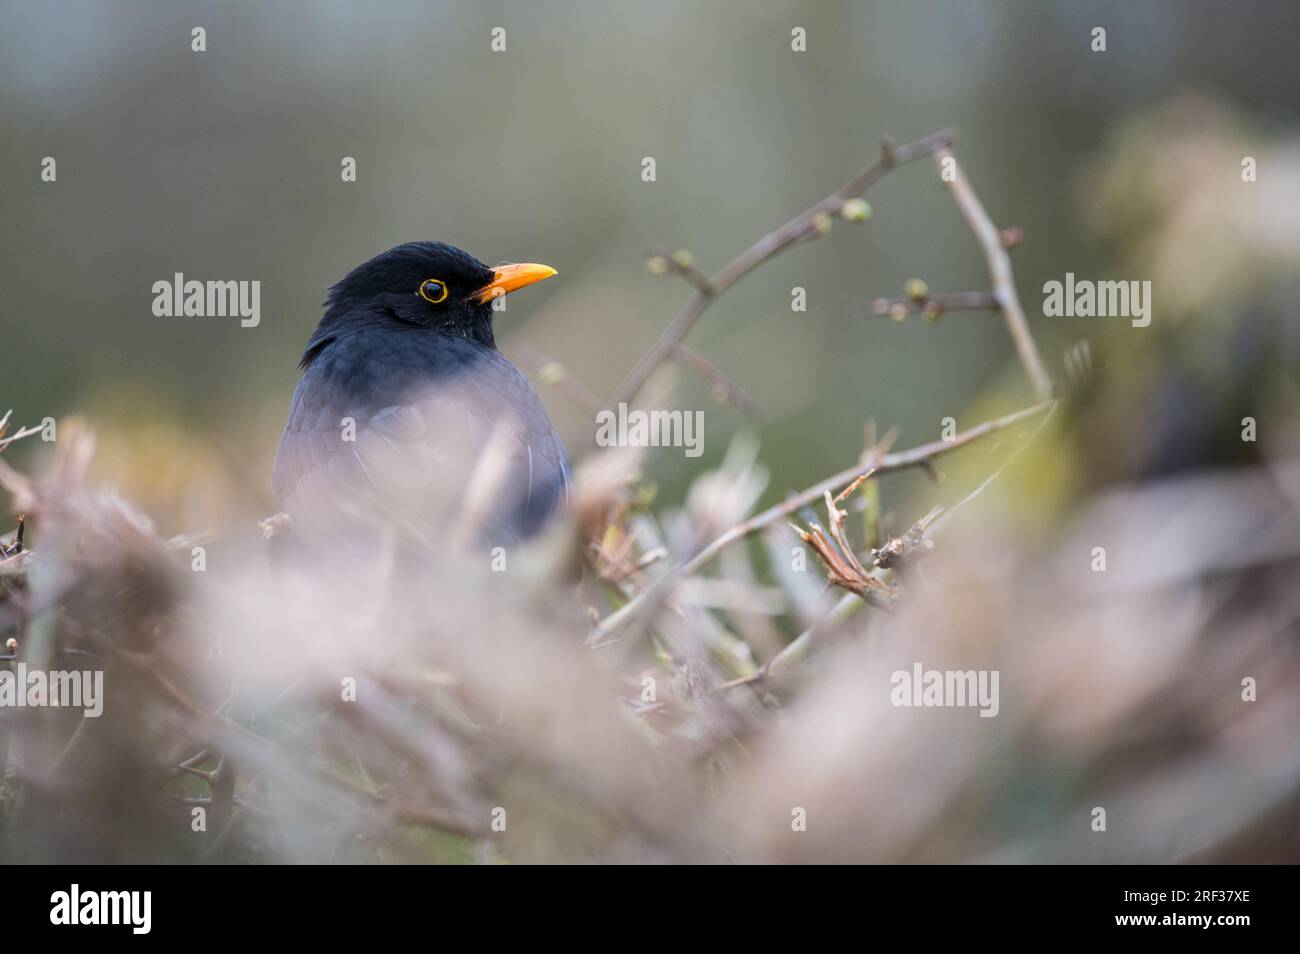 Un comune uccello nero, chiamato anche uccello nero eurasiatico, arroccato tra i rami all'inizio della primavera, quando le foglie sulle piante stanno appena iniziando a germogliare. Foto Stock